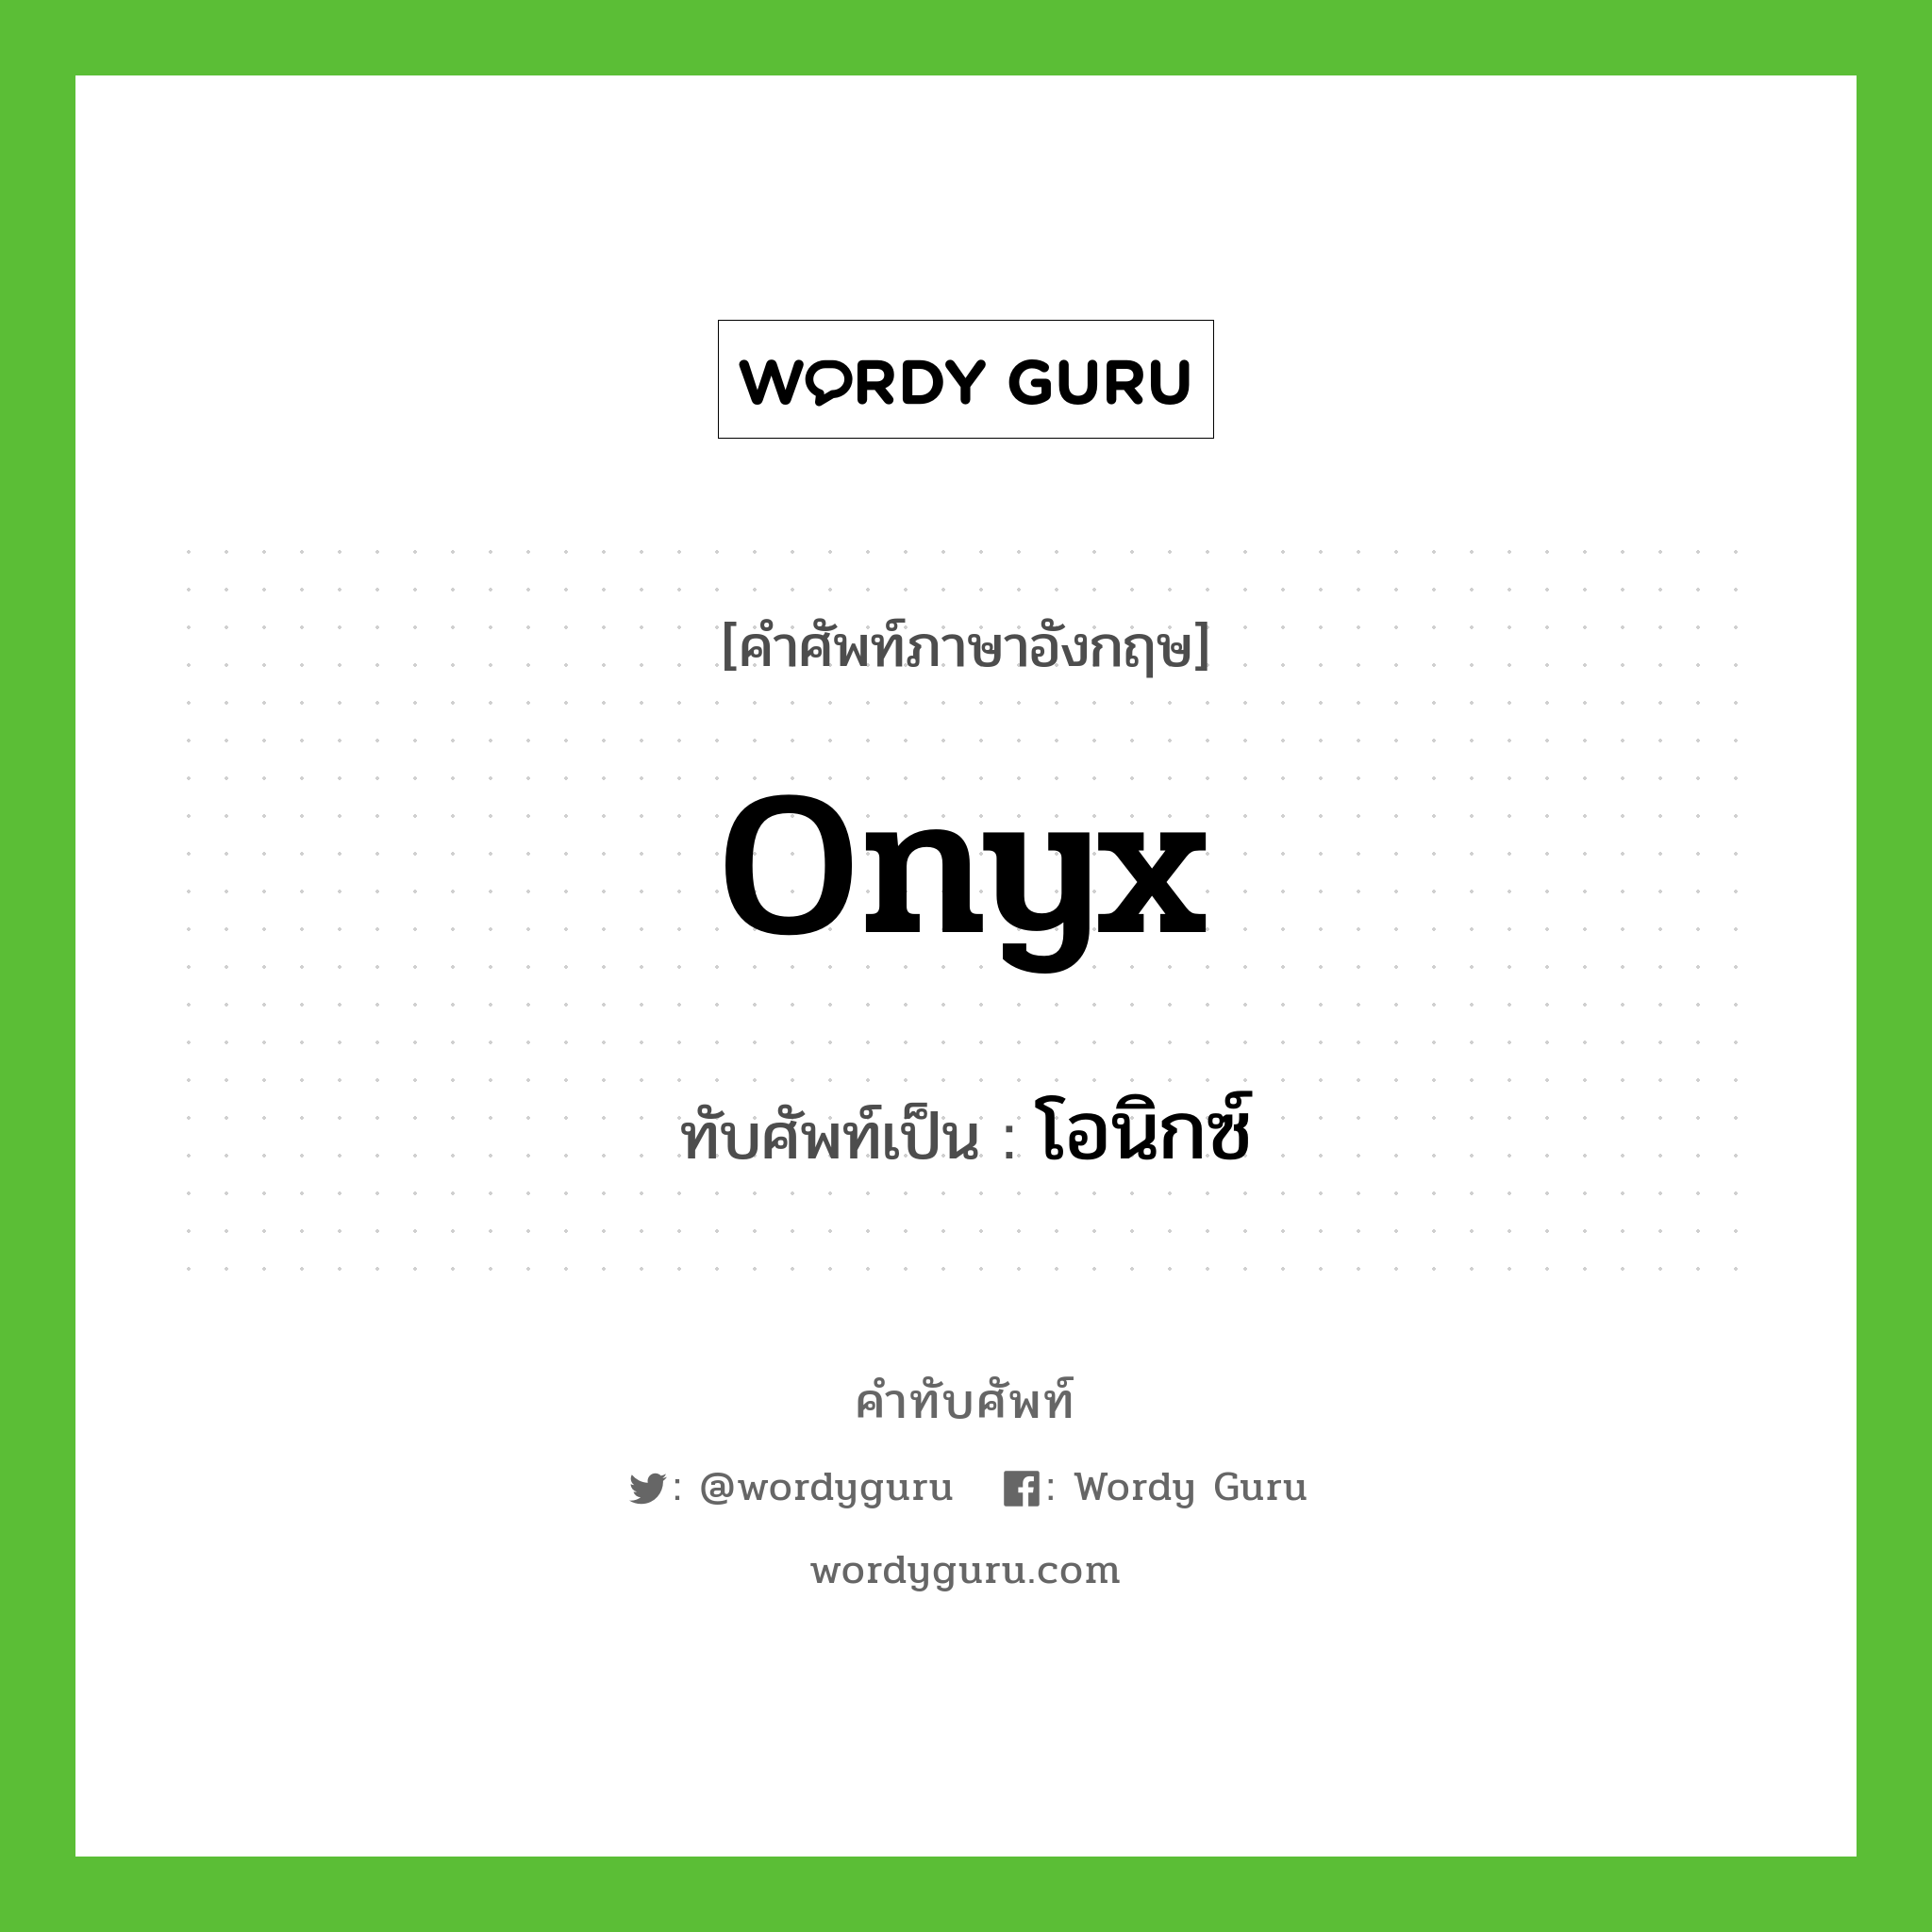 onyx เขียนเป็นคำไทยว่าอะไร?, คำศัพท์ภาษาอังกฤษ onyx ทับศัพท์เป็น โอนิกซ์